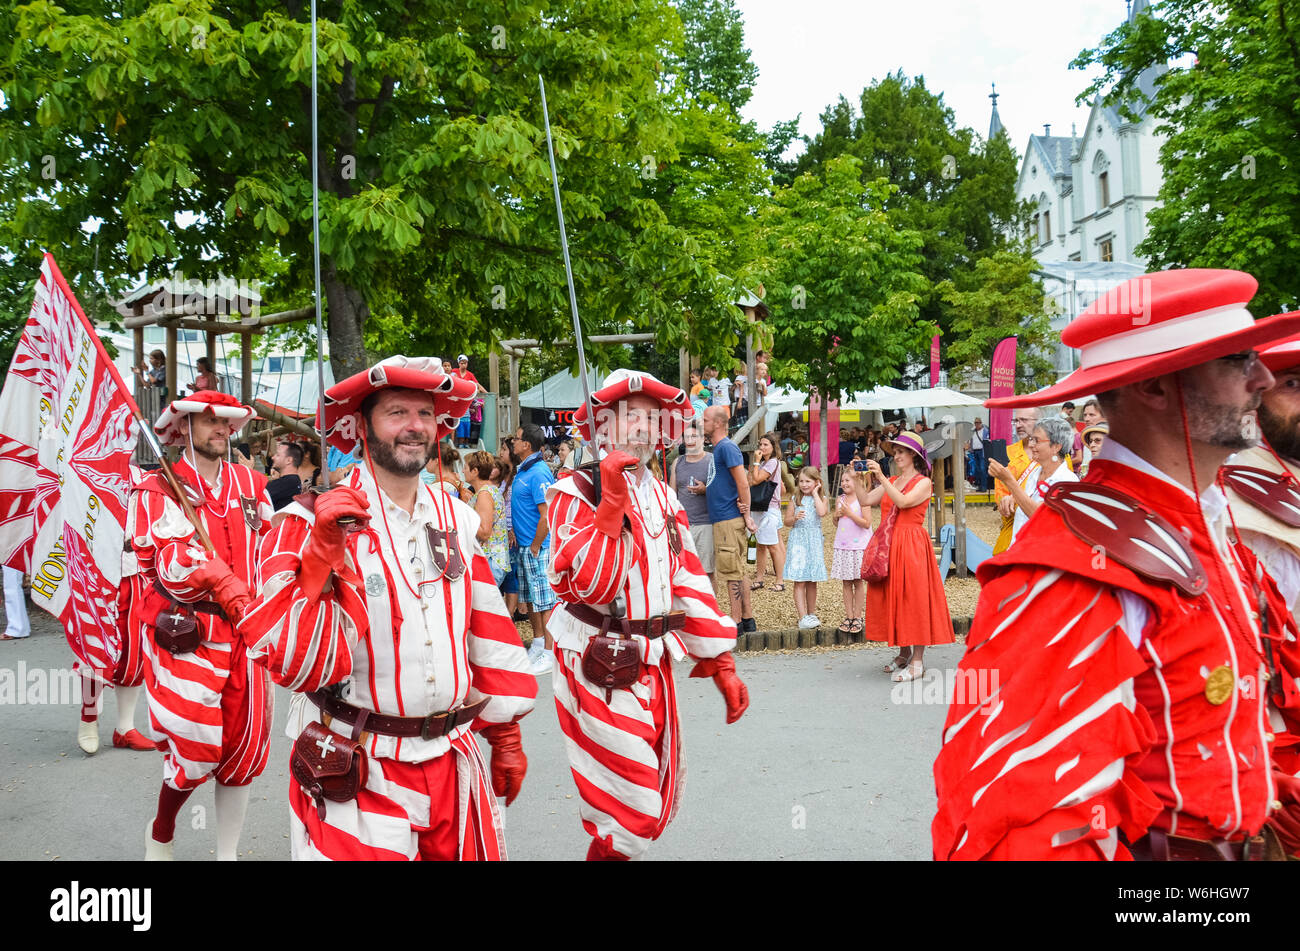 Vevey, Suisse - 1 août 2019 : défilé traditionnel sur la fête nationale suisse. Fête nationale de la Suisse, situé au 1er août. Célébration de la fondation de la Confédération suisse. Jour de l'indépendance. Banque D'Images